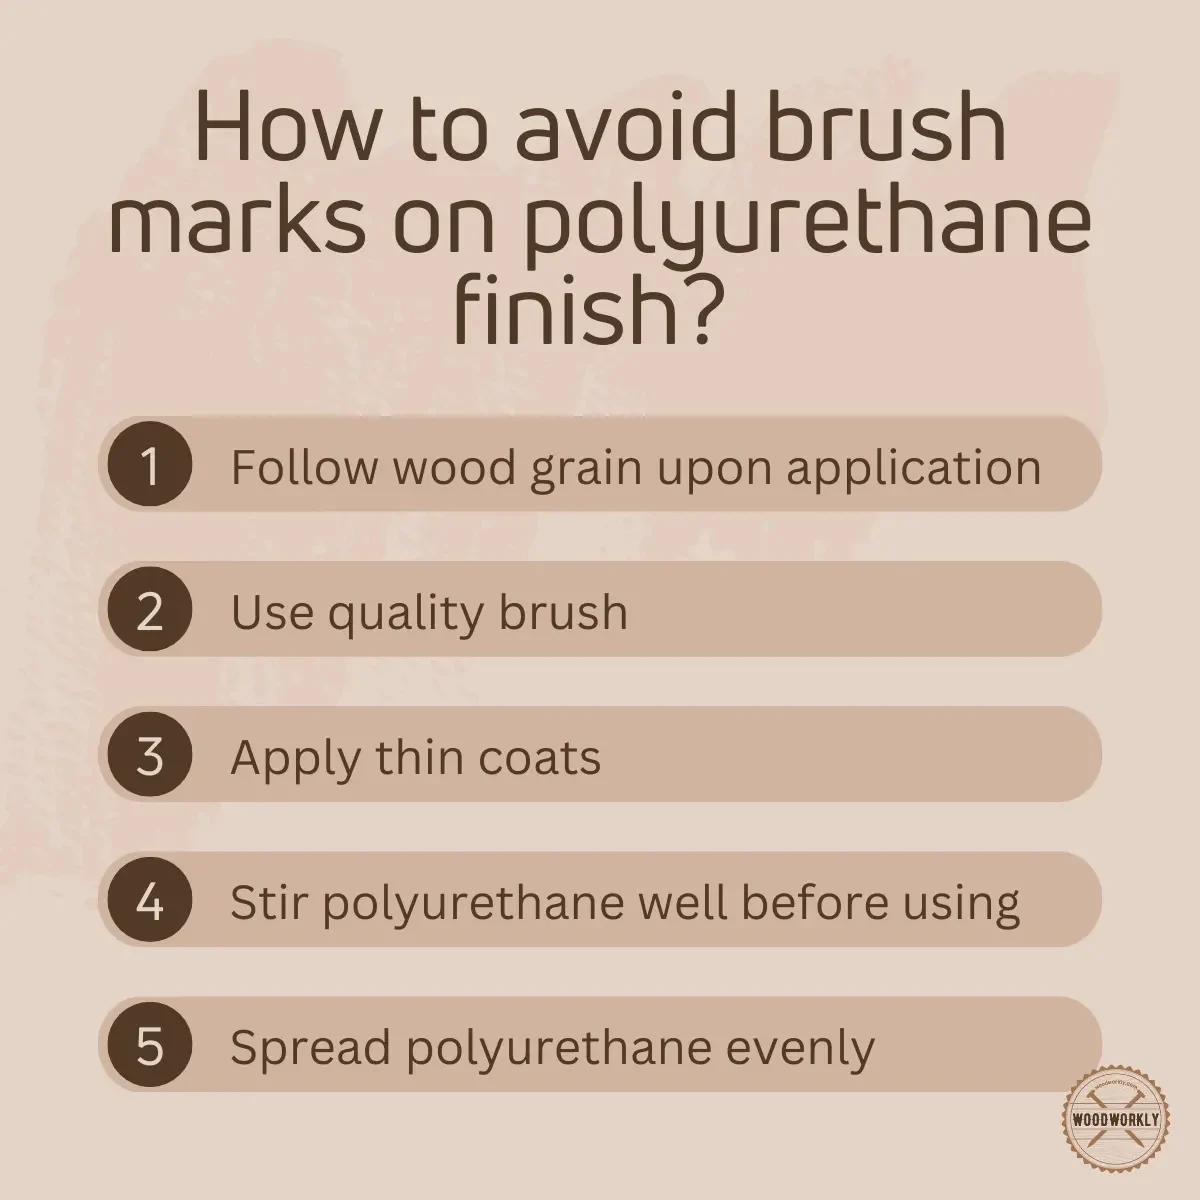 How to avoid brush marks on polyurethane finish